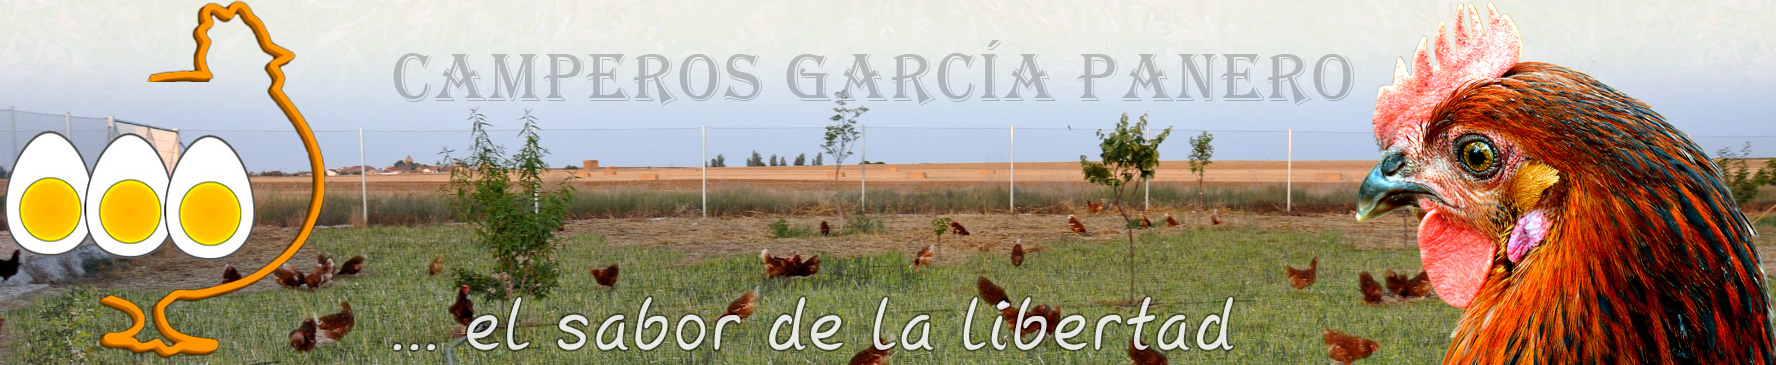 Huevos Camperos García Panero. Huevos de gallinas que viven en libertad. Sabor auténtico. Sabor a vida sana y natural. Salamanca.